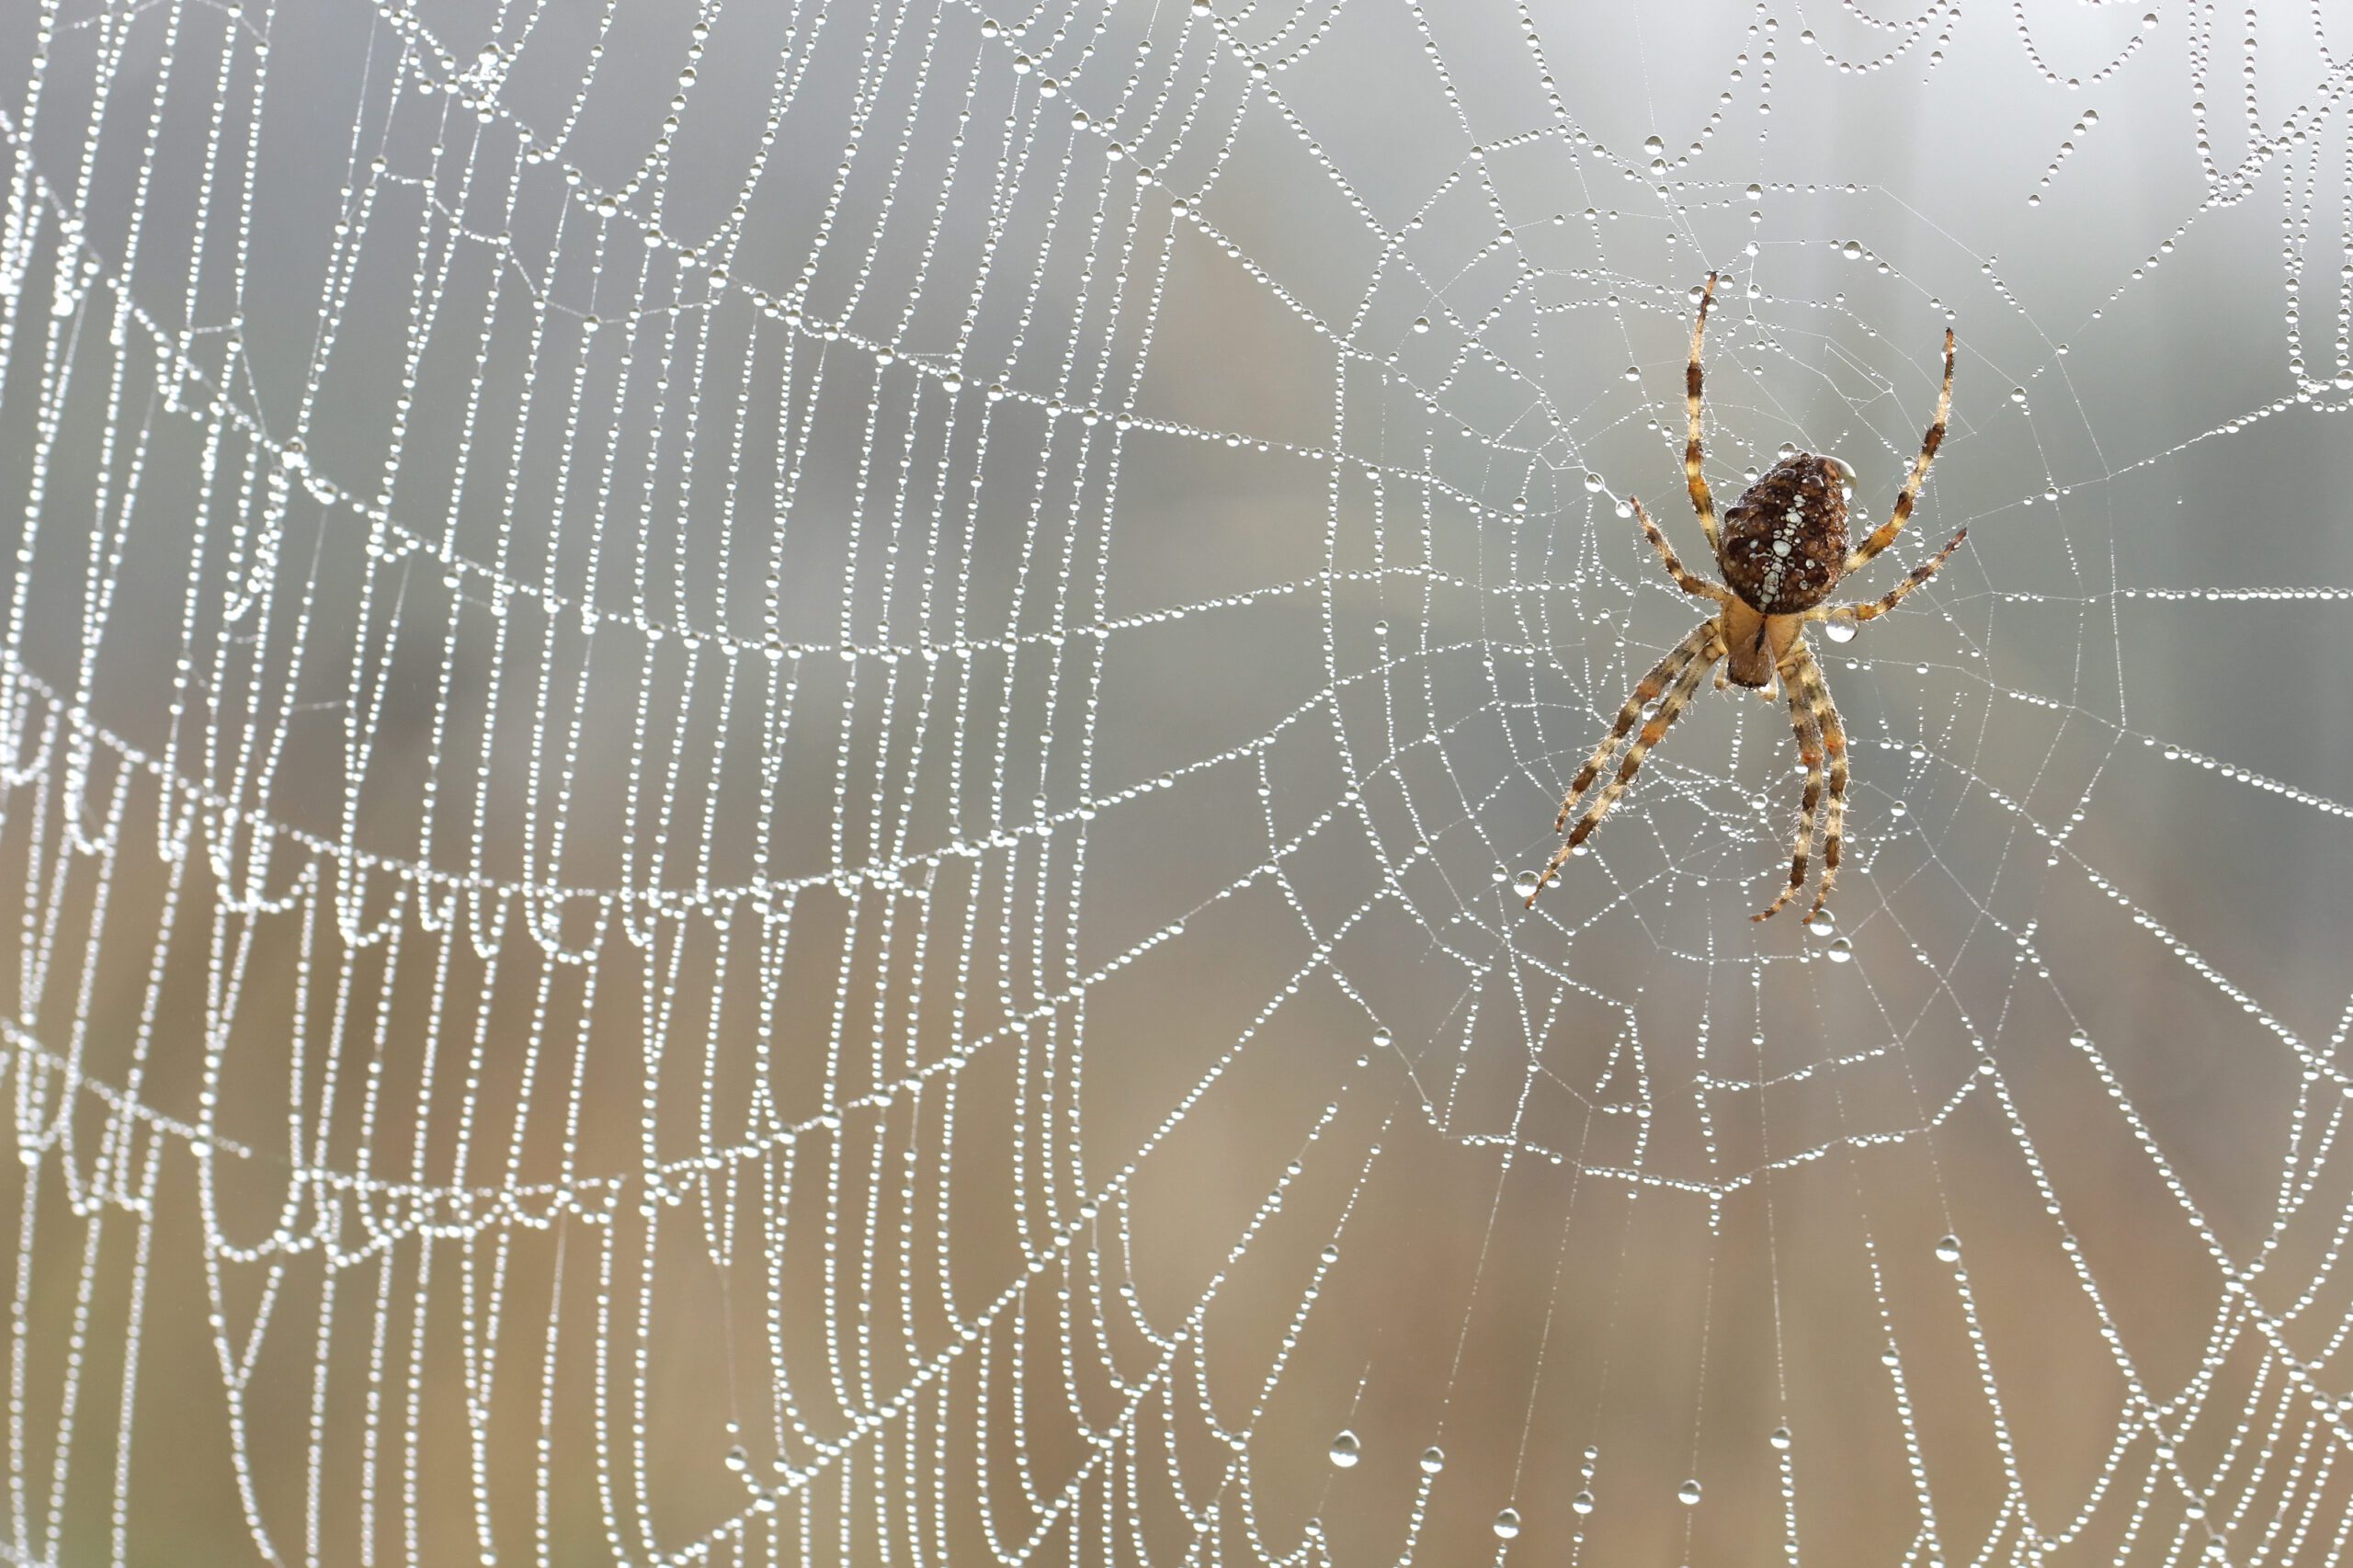 spider in spider web